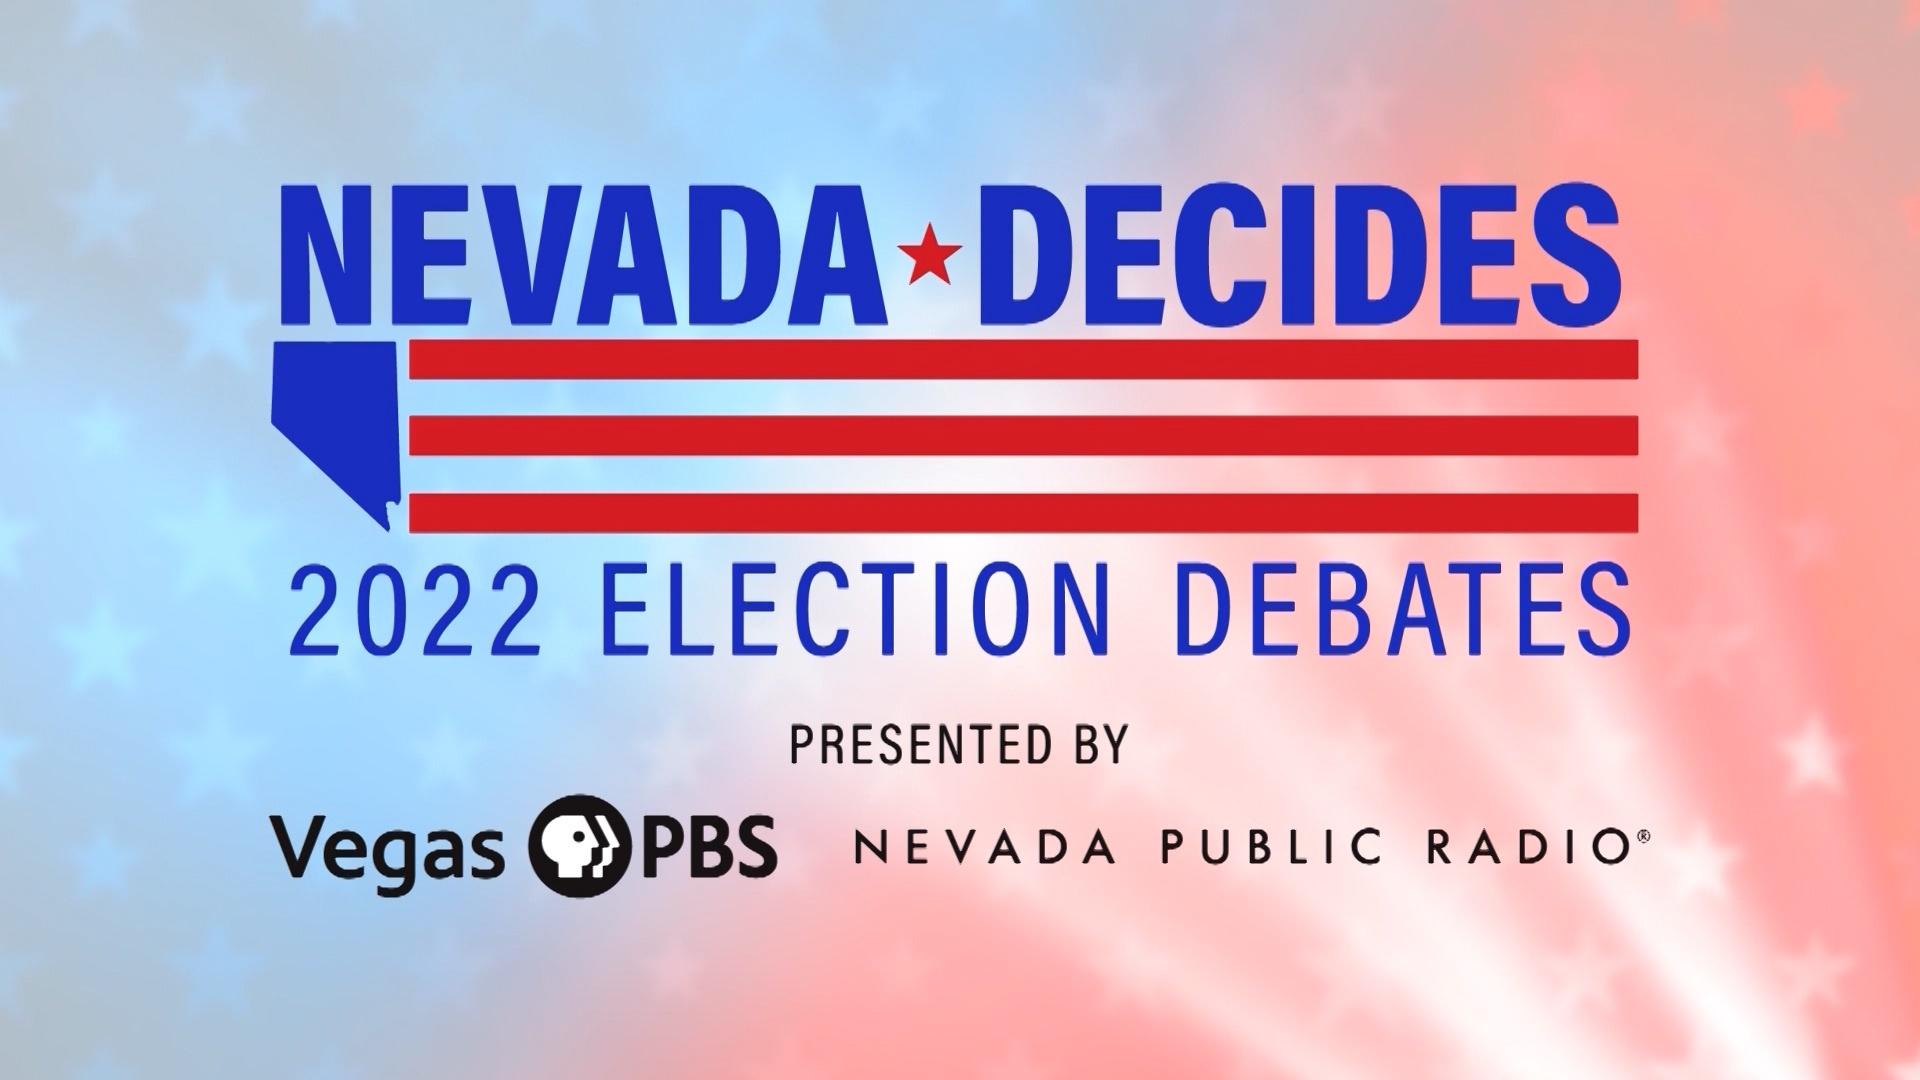 Nevada Decides: 2022 Election Debates